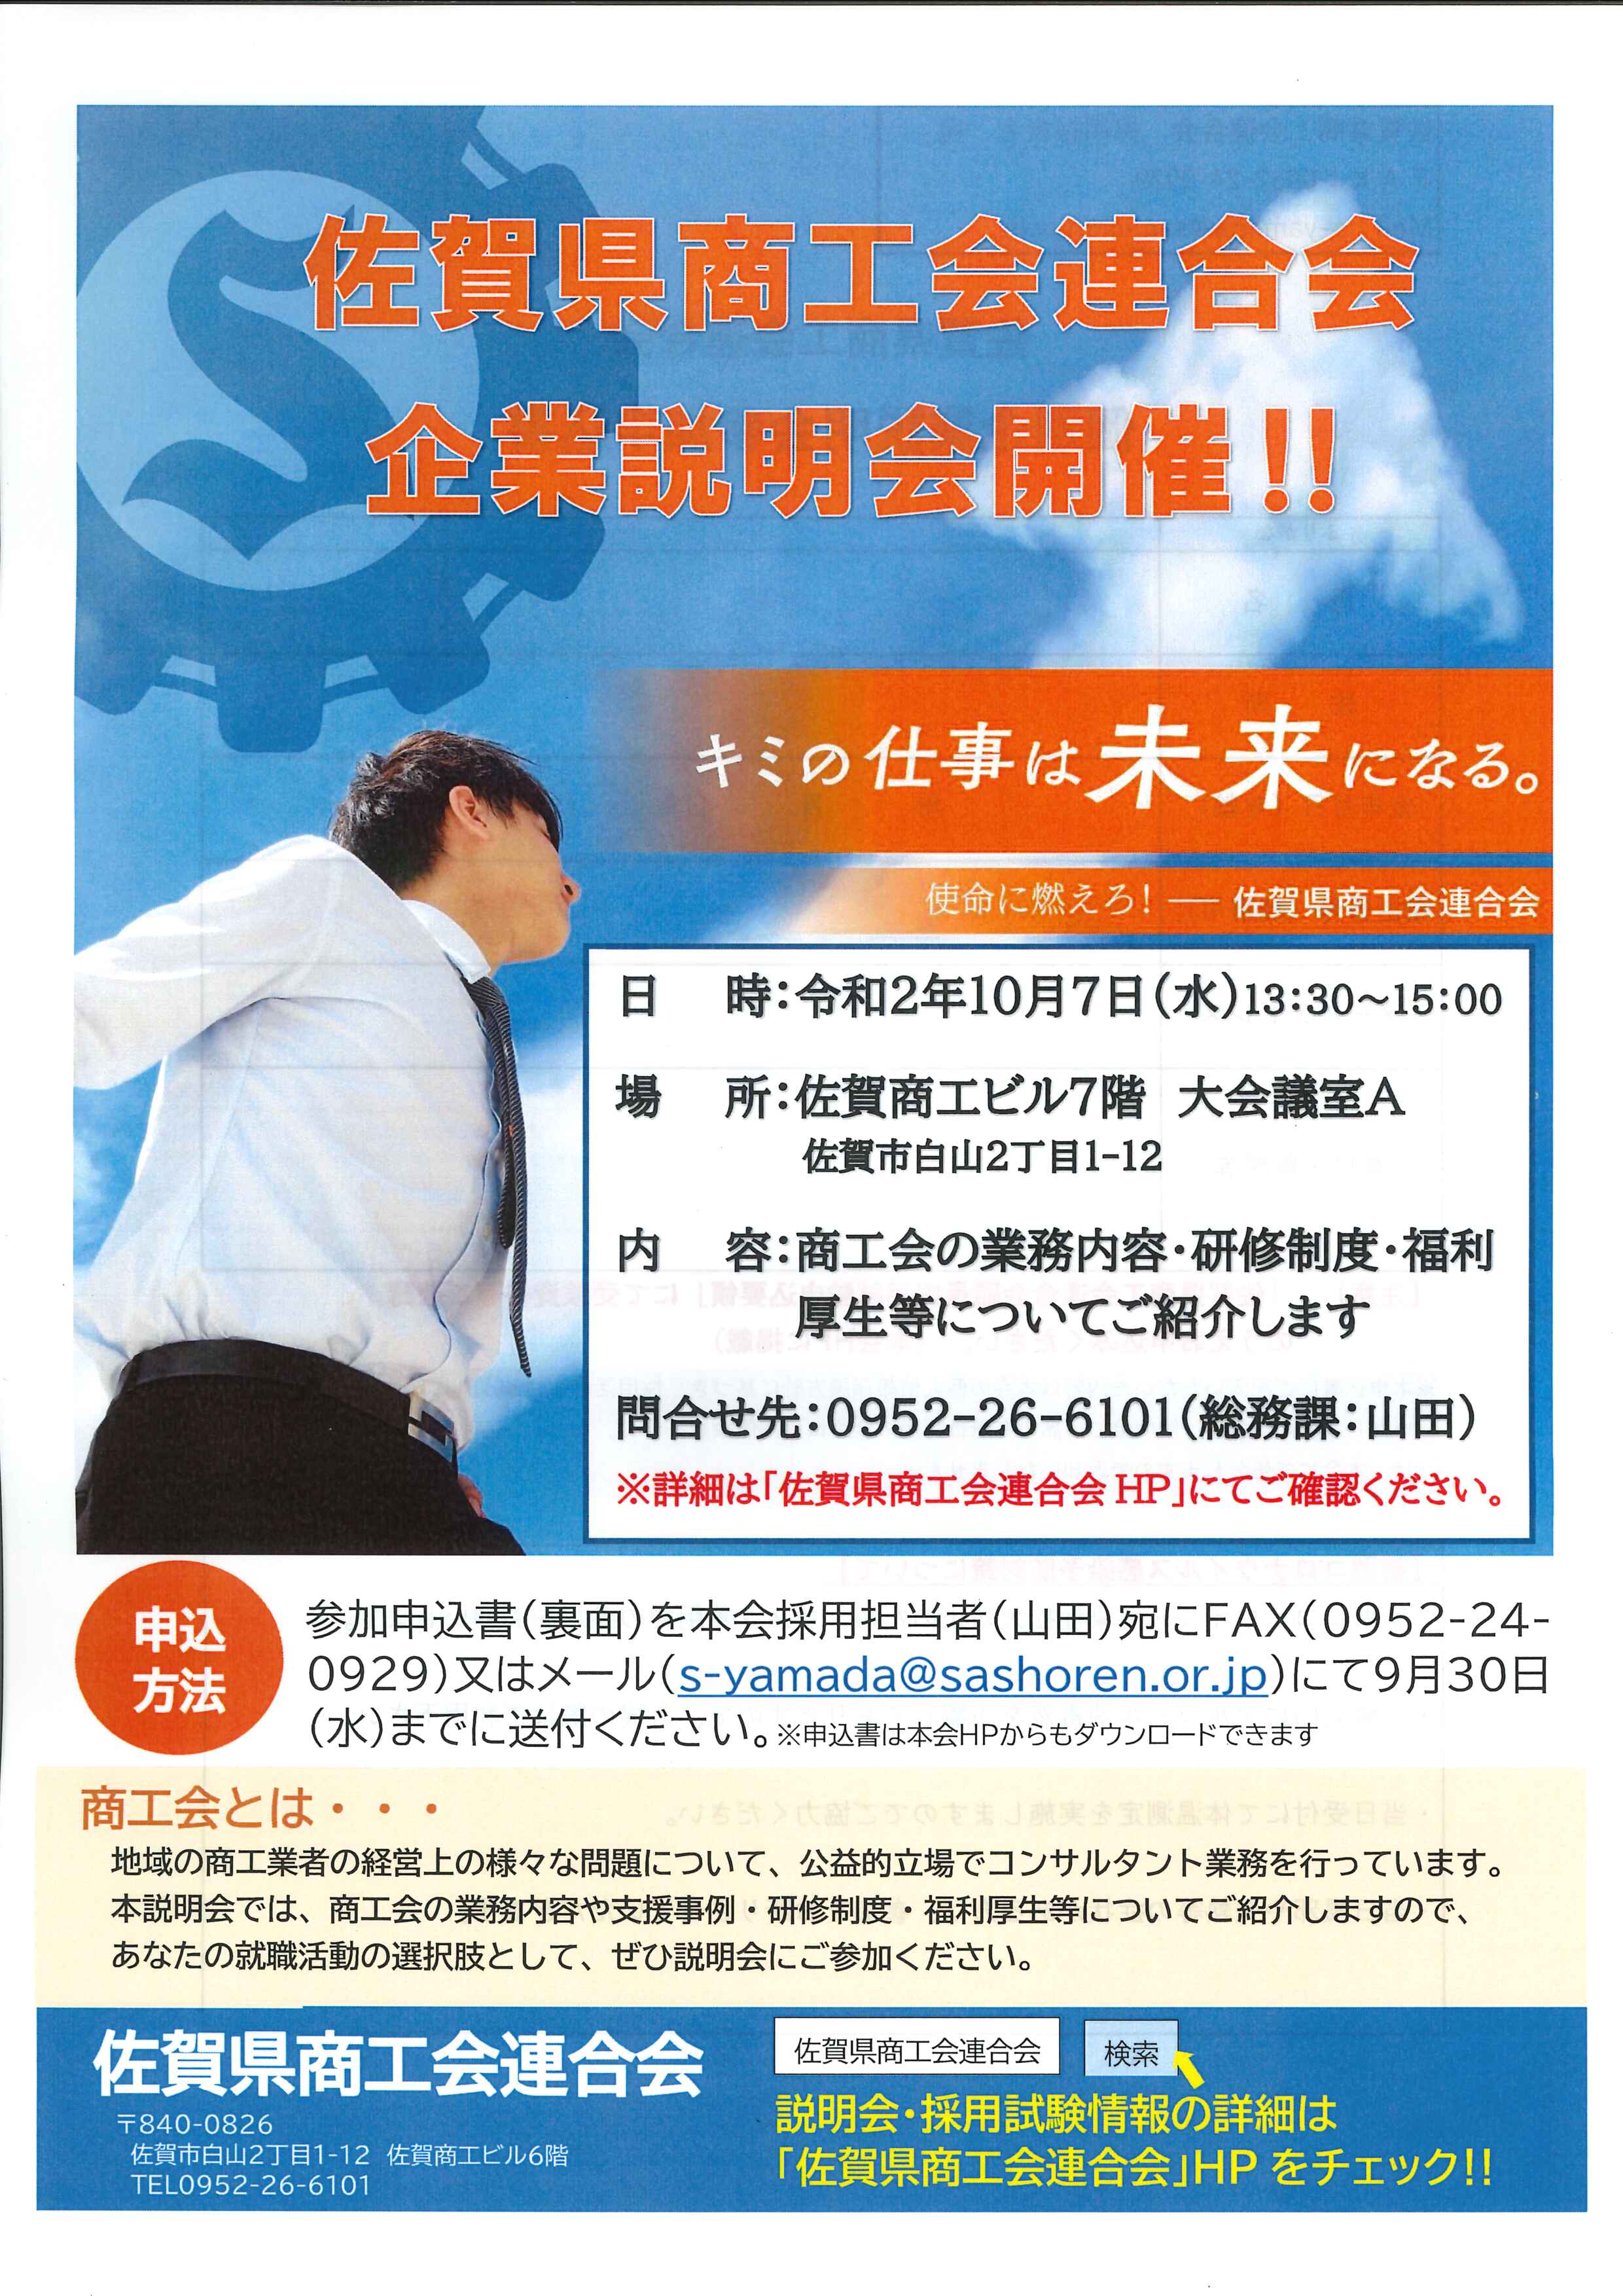 佐賀県商工会連合会企業説明会を開催します‼